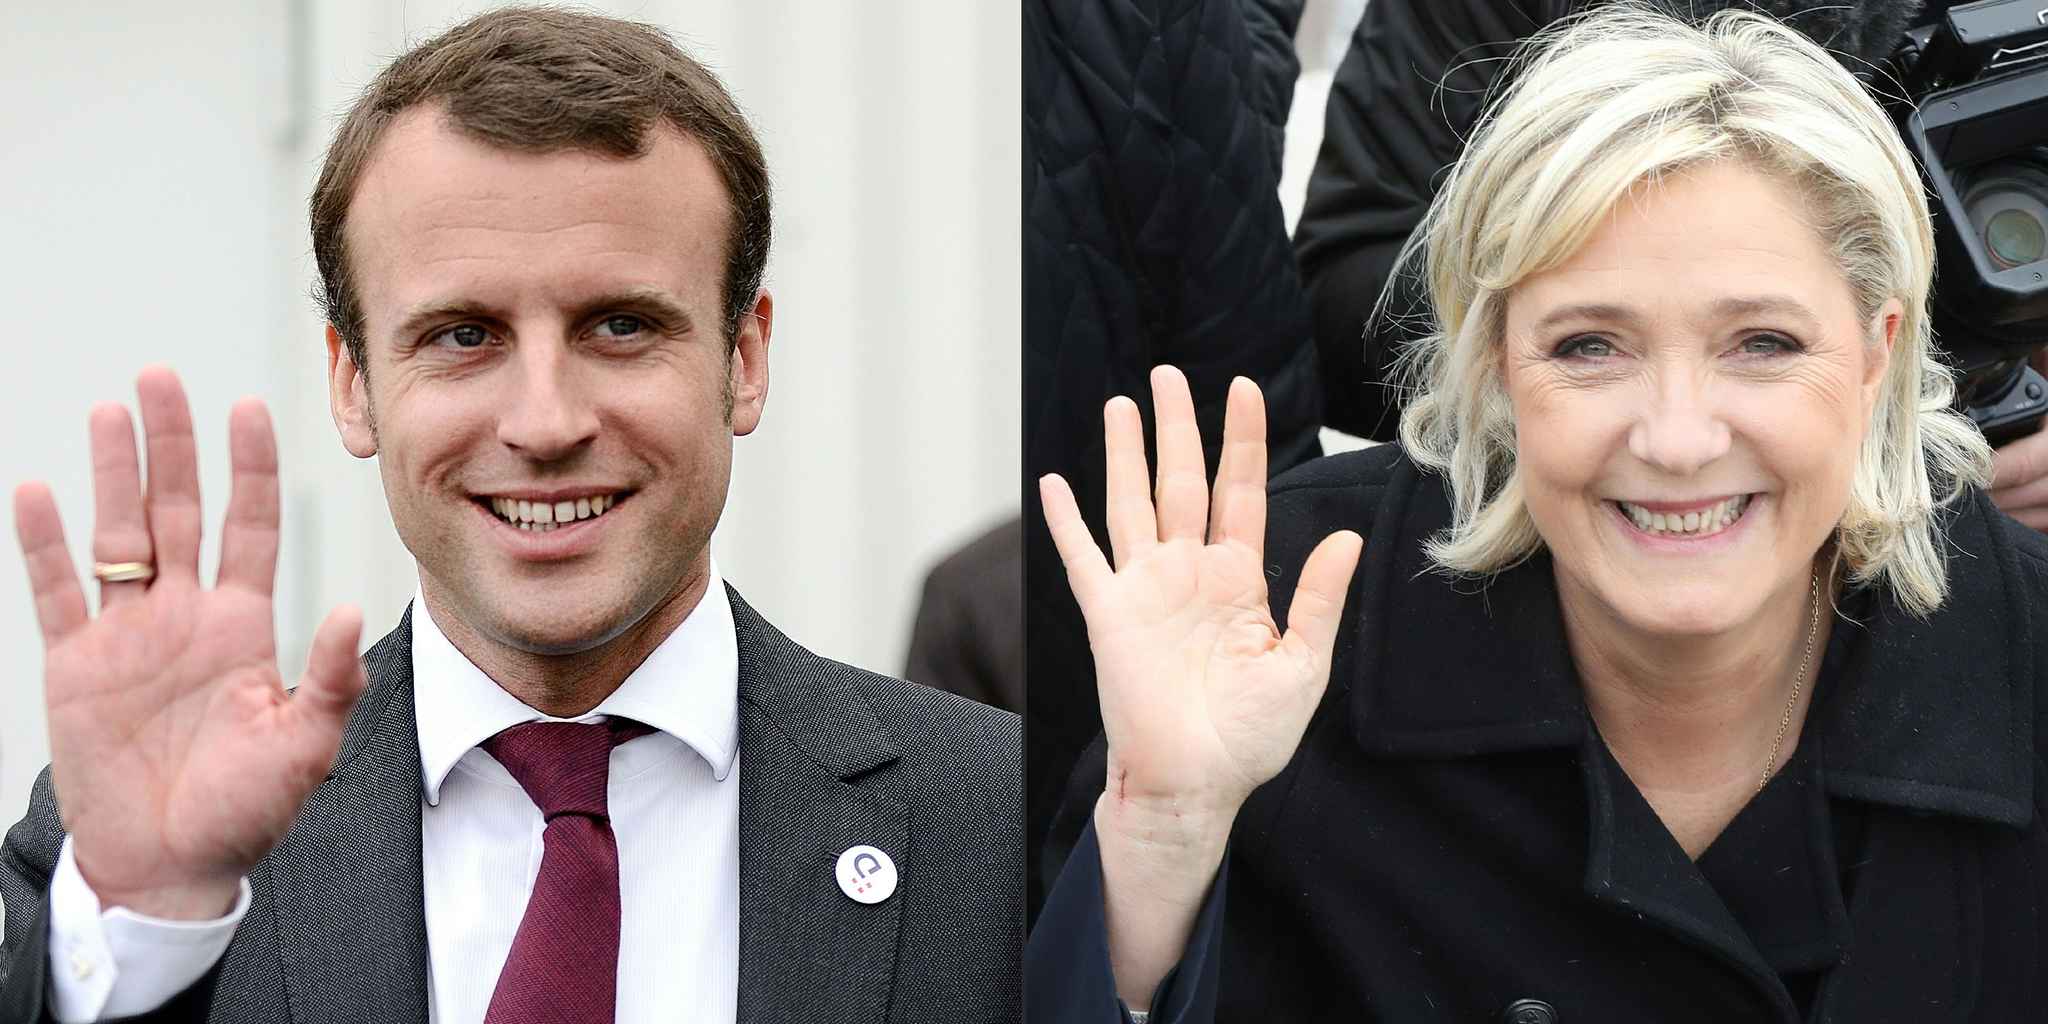 Historique ! Le comparatif Delanopolis des programmes Le Pen versus Macron